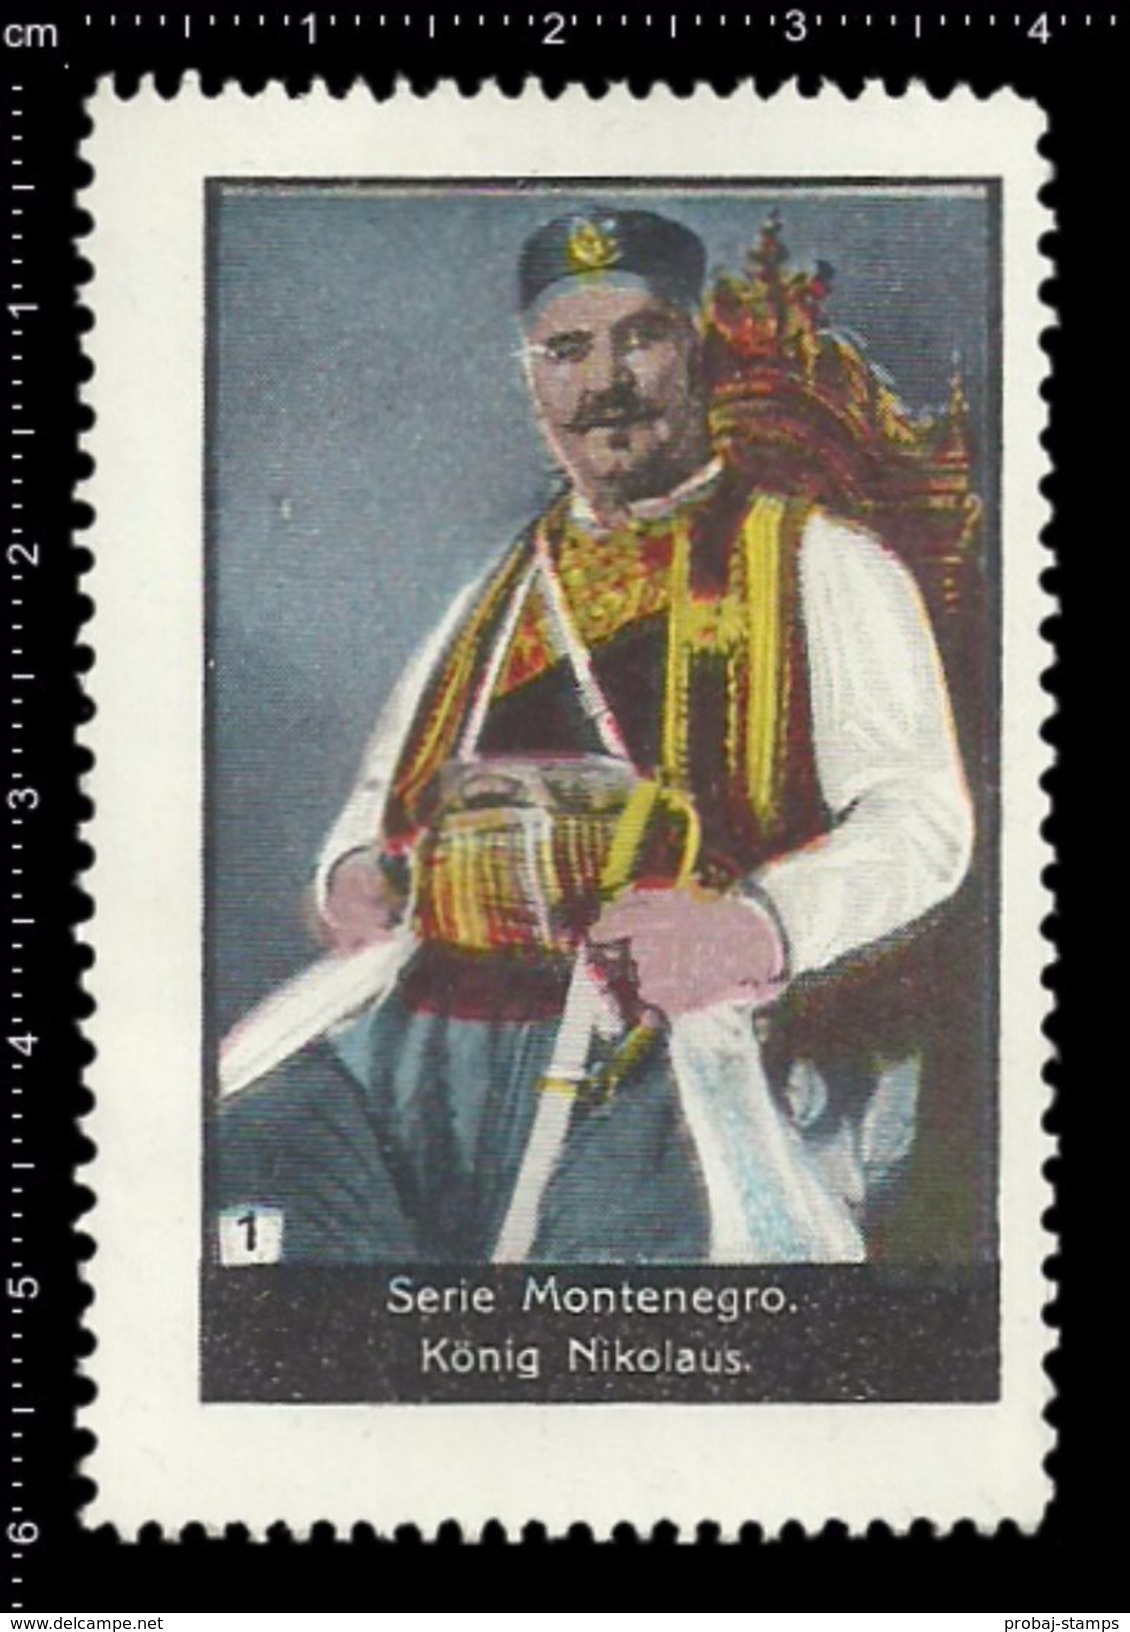 German Poster Stamps, Reklamemarke, Cinderellas, Montenegro, König Nikolaus, King - Cinderellas